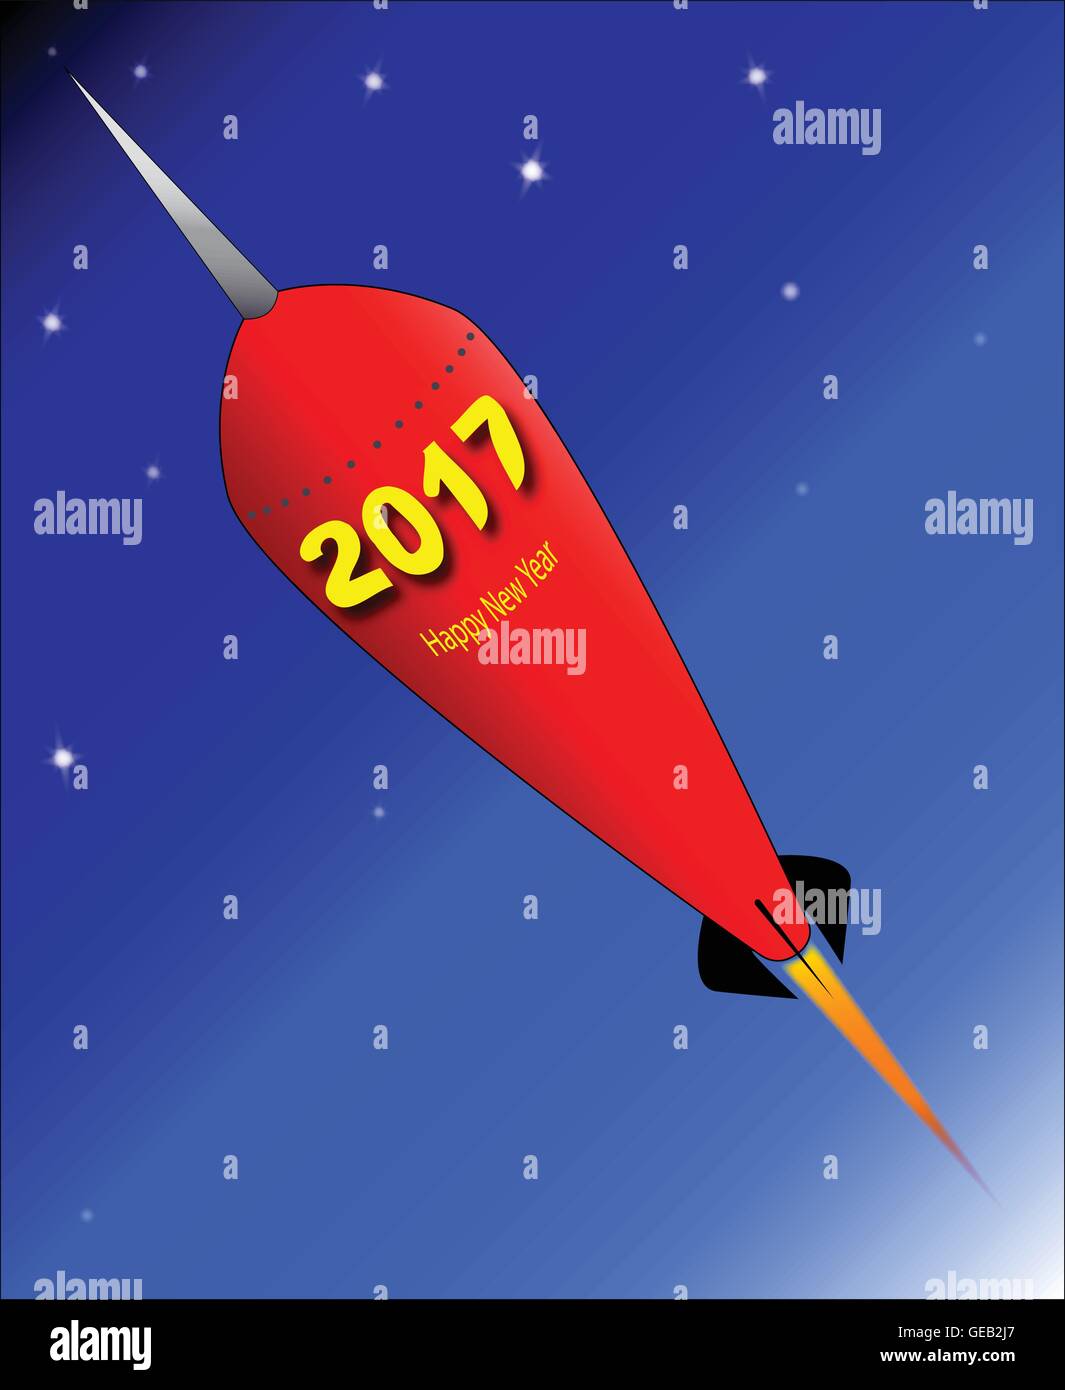 Ein Retro-Look-Rakete mit der Meldung "Happy New Year - 2017". Stock Vektor